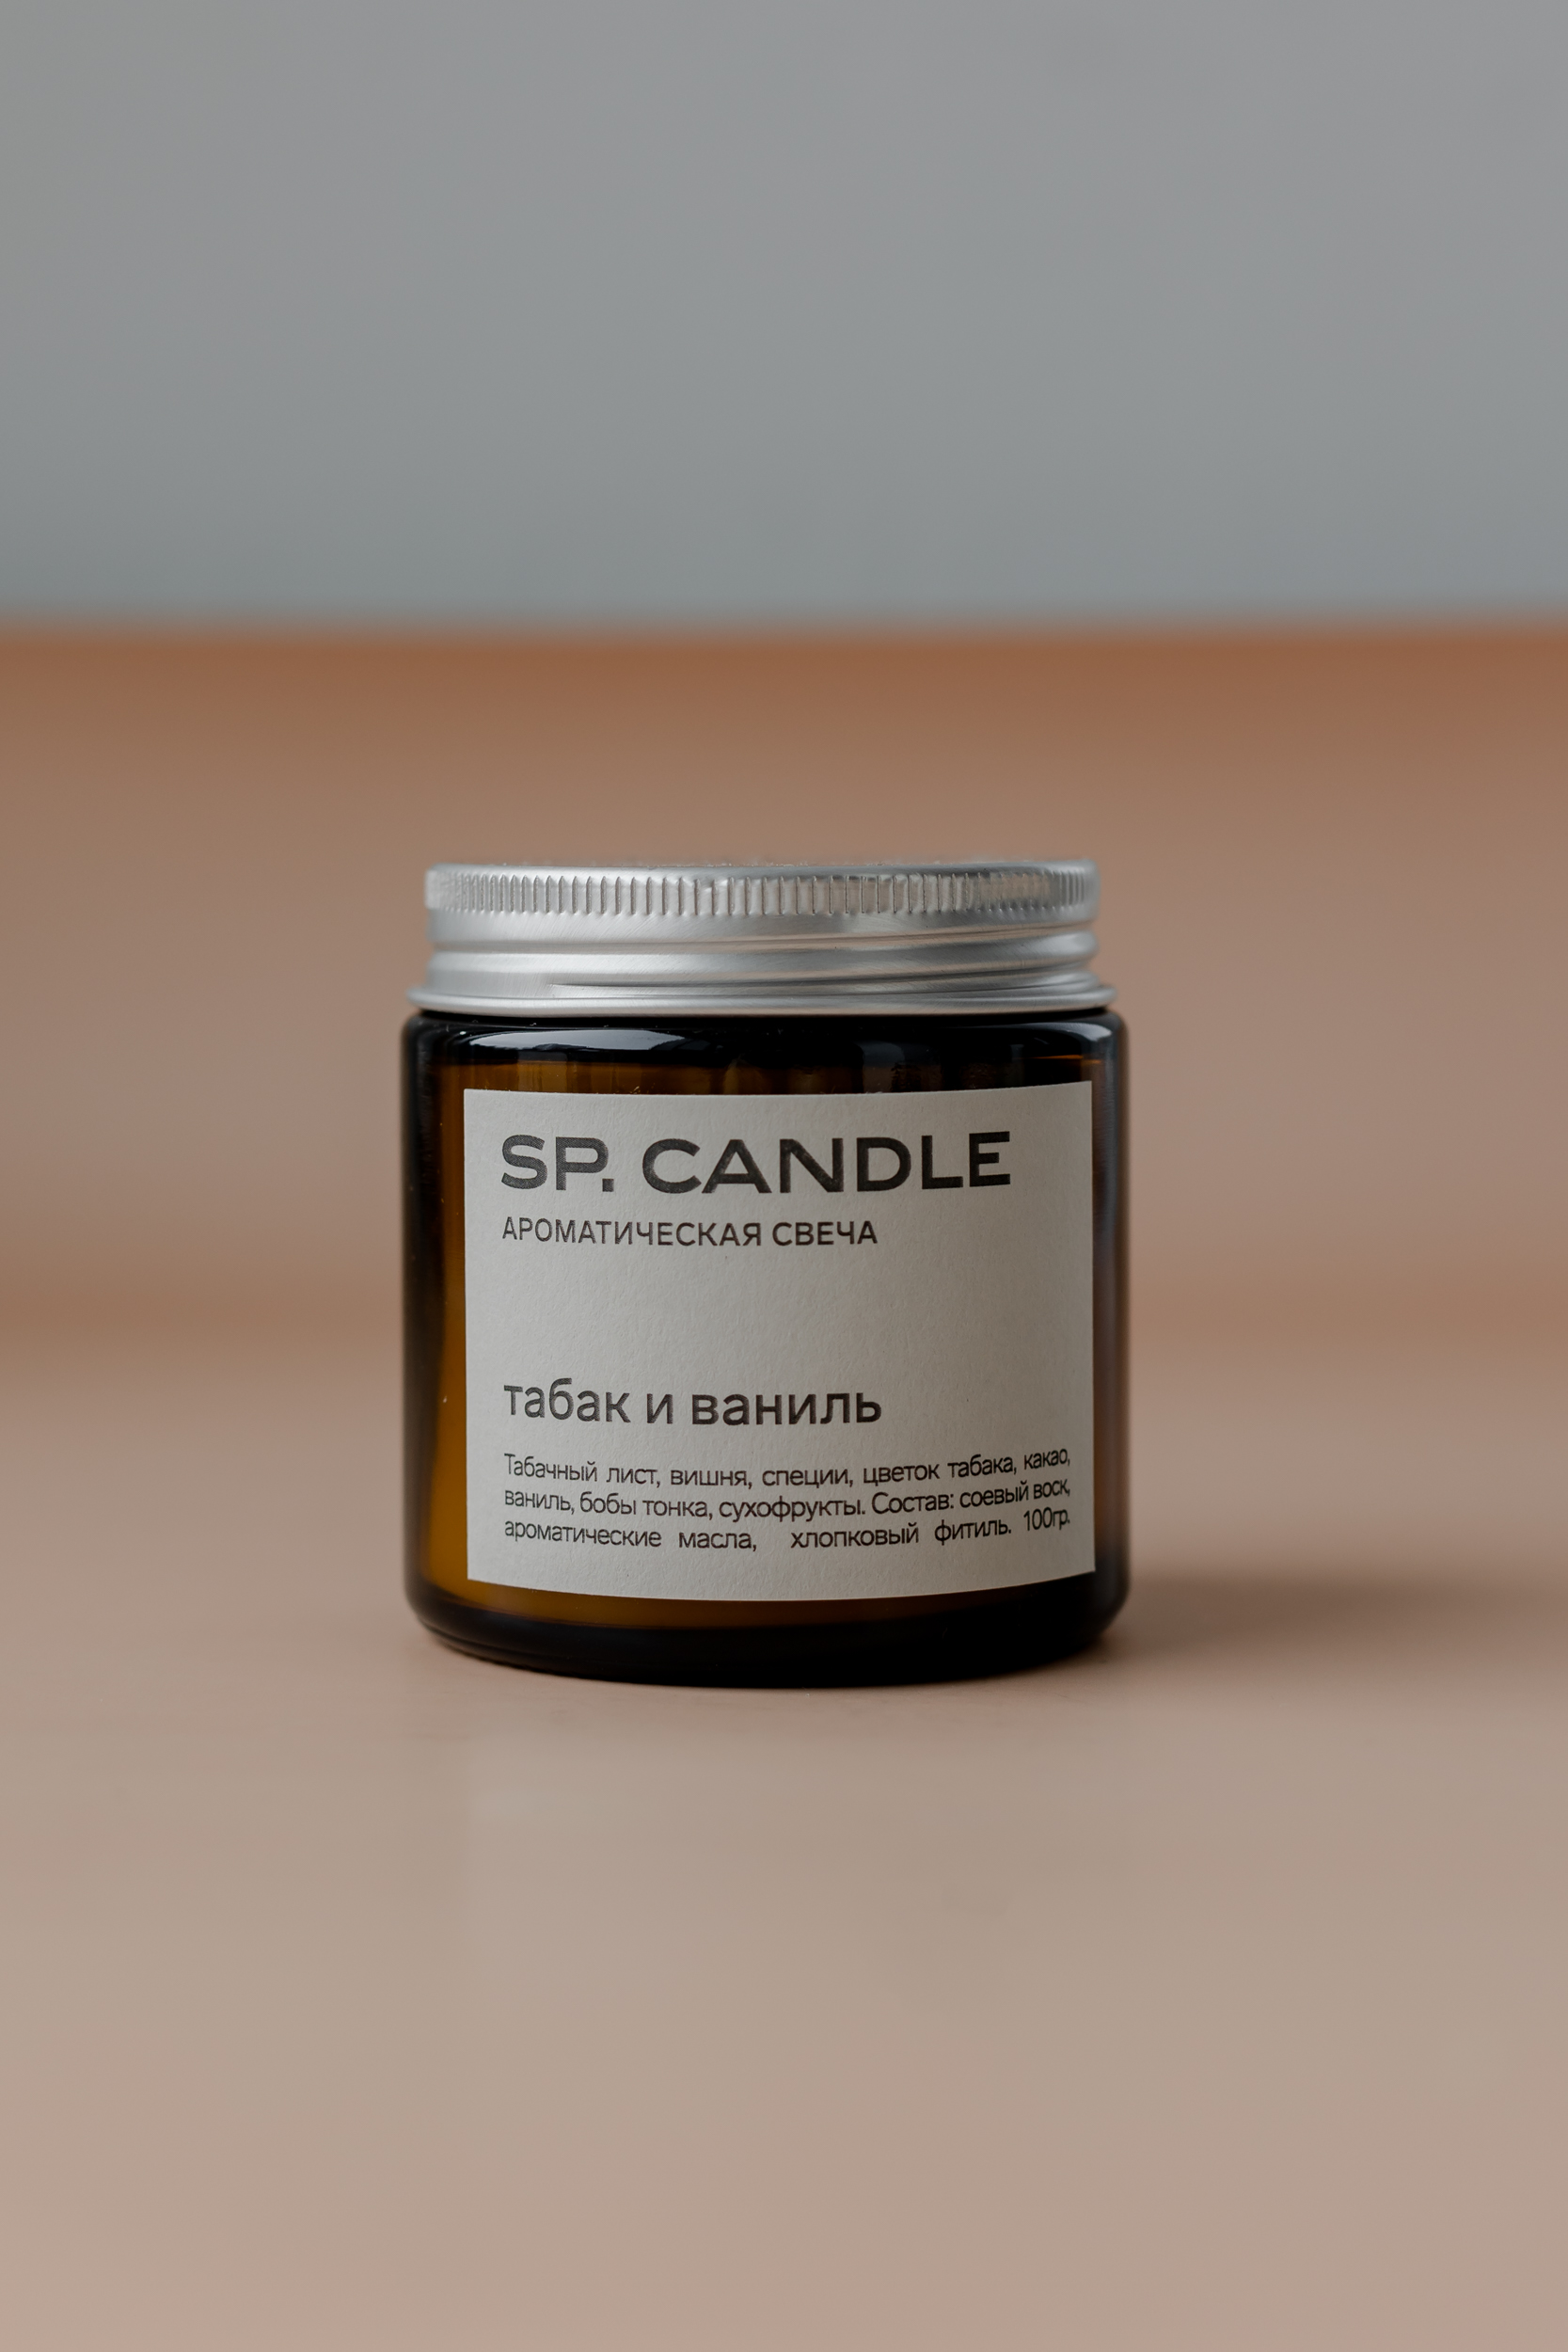 SP. CANDLE Ароматическая свеча Табак и ваниль, 100г - фото 1